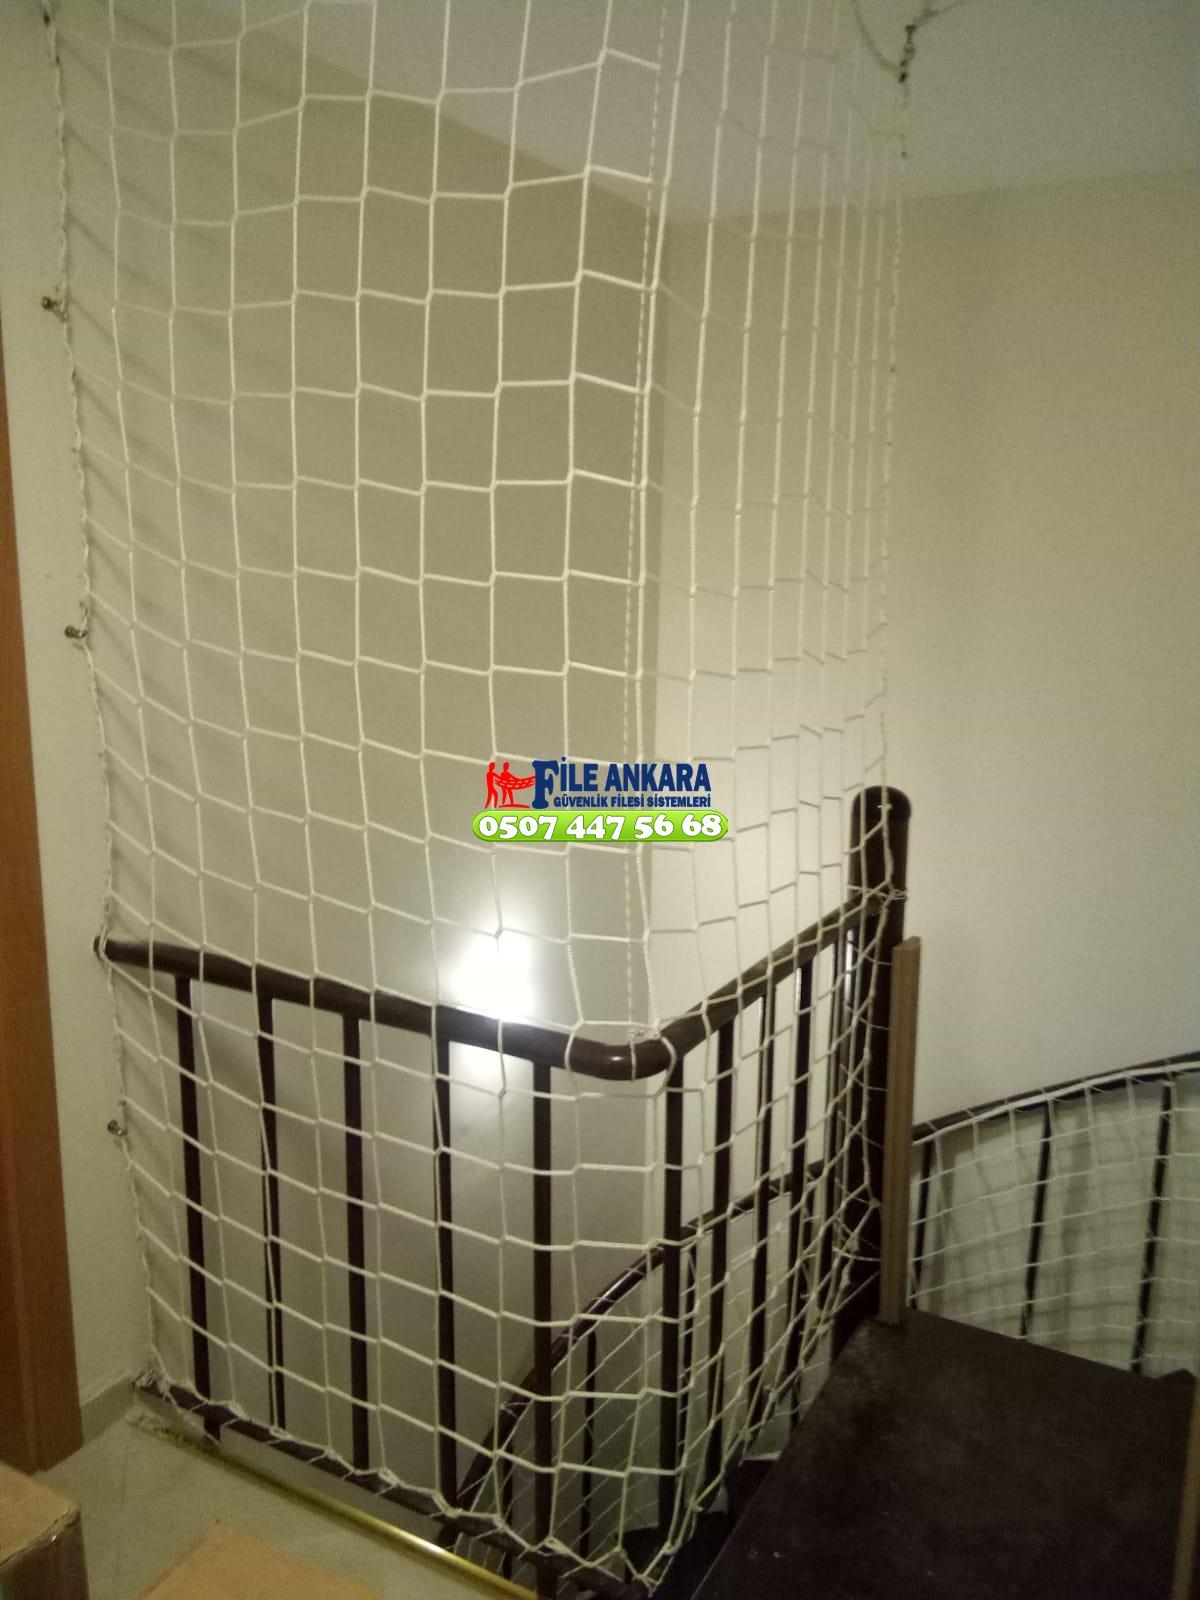  Söğütözü Balkon  koruma filesi - Merdiven filesi - En ucuz balkon güvenlik filesi satış ve montajı 0507 447 56 68